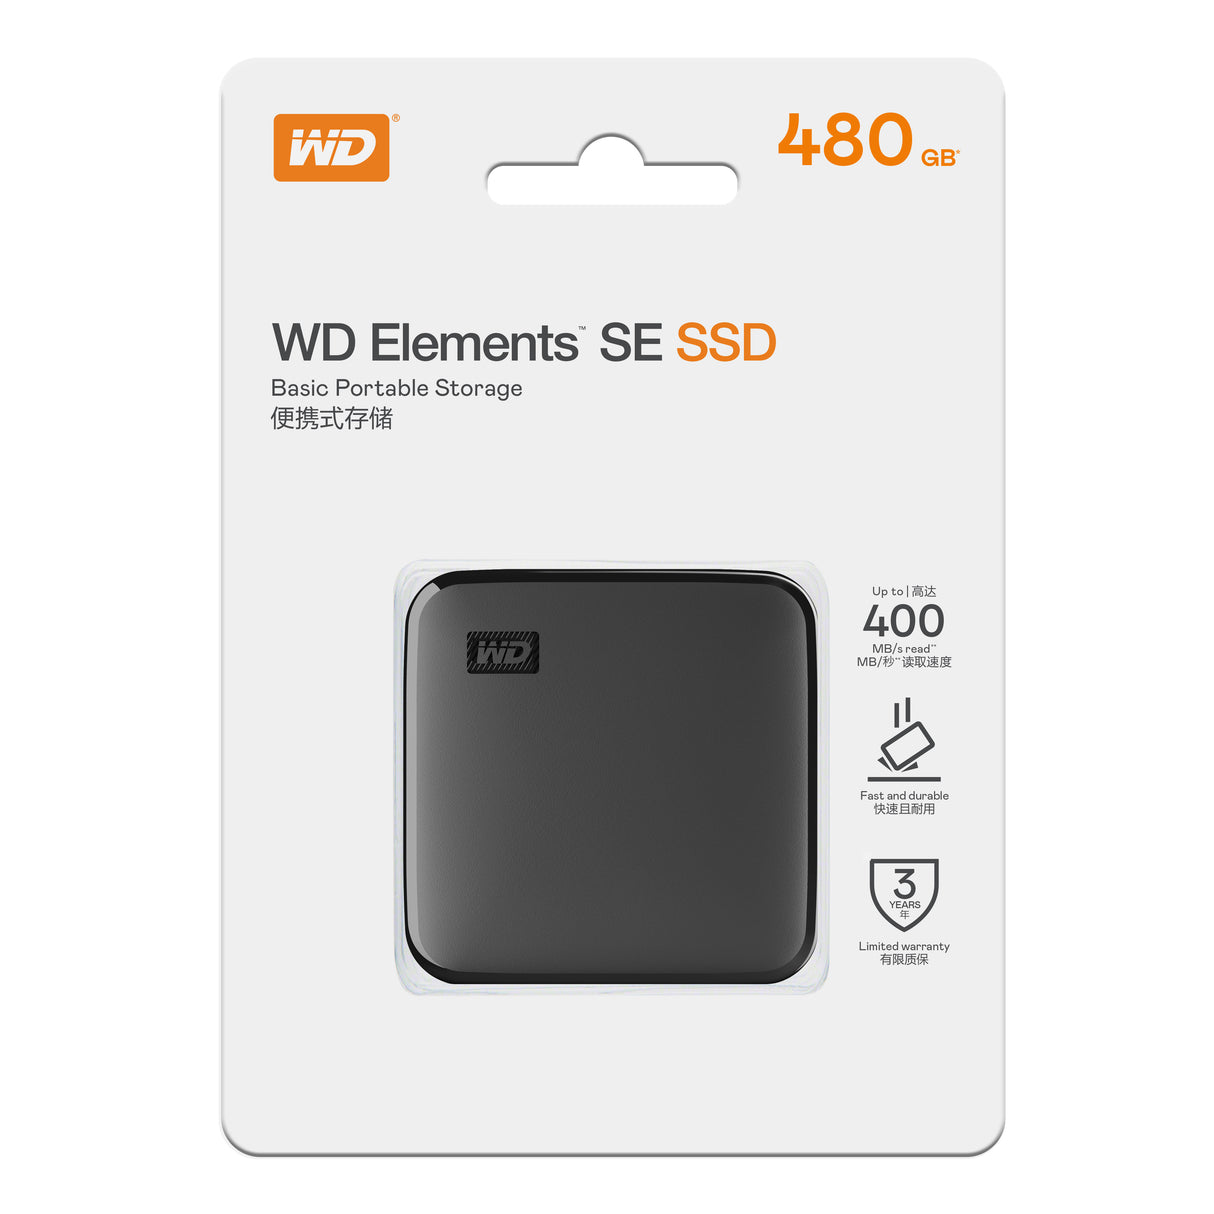 WD 480GB ELEMENTS SE SSD, USB 3.0